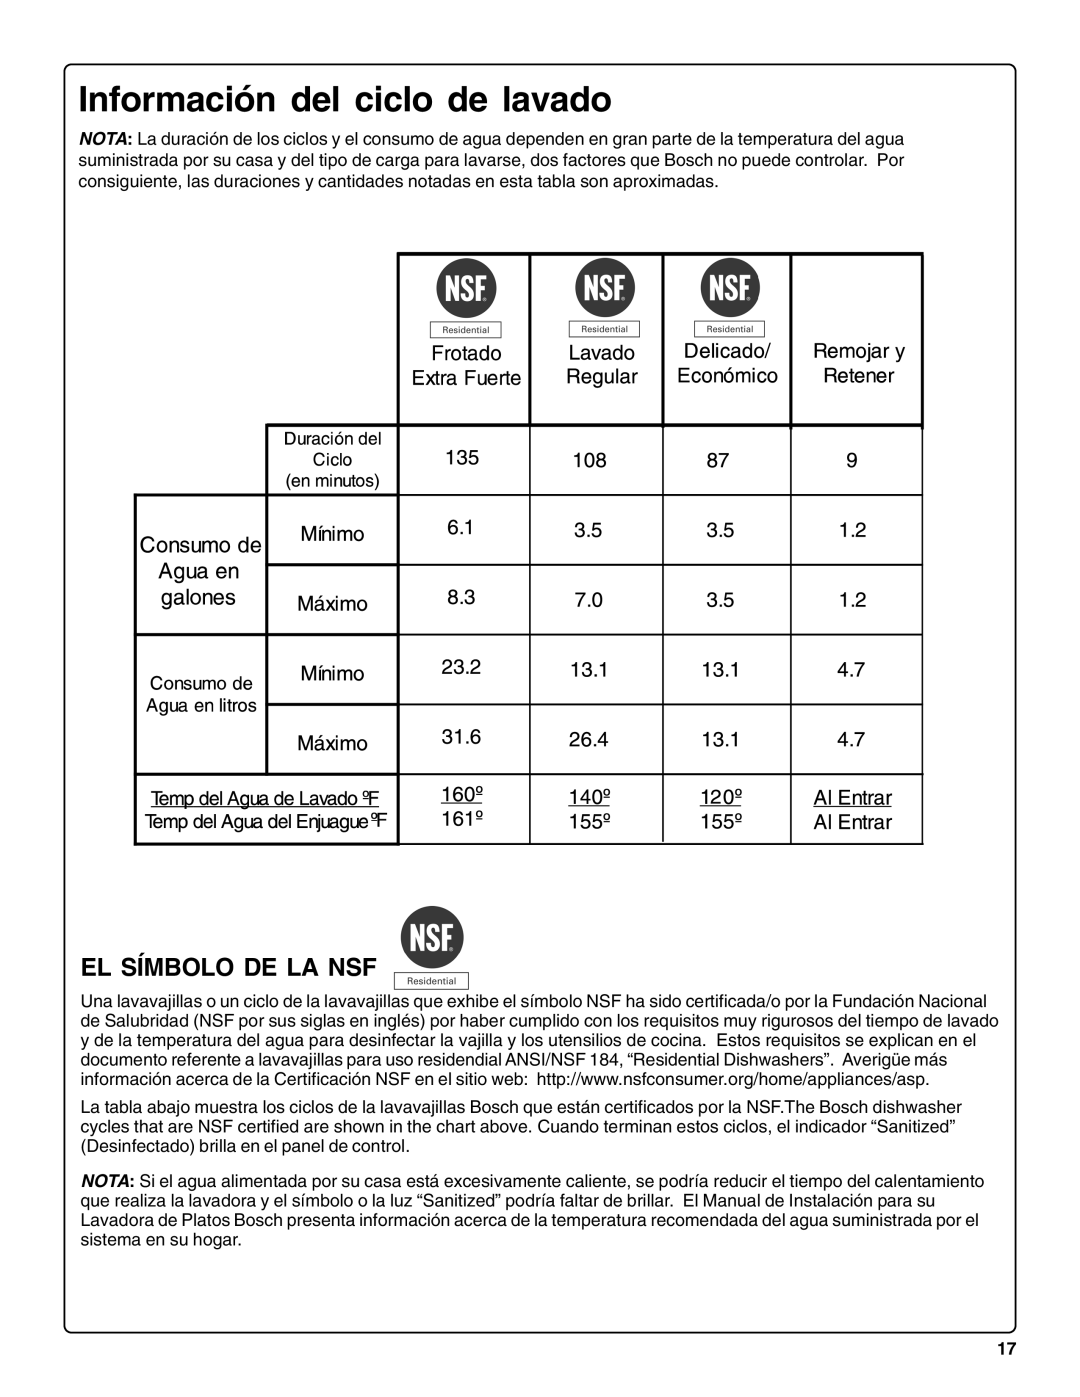 Bosch Appliances sHe43C installation instructions Información del ciclo de lavado, El Símbolo De La Nsf 